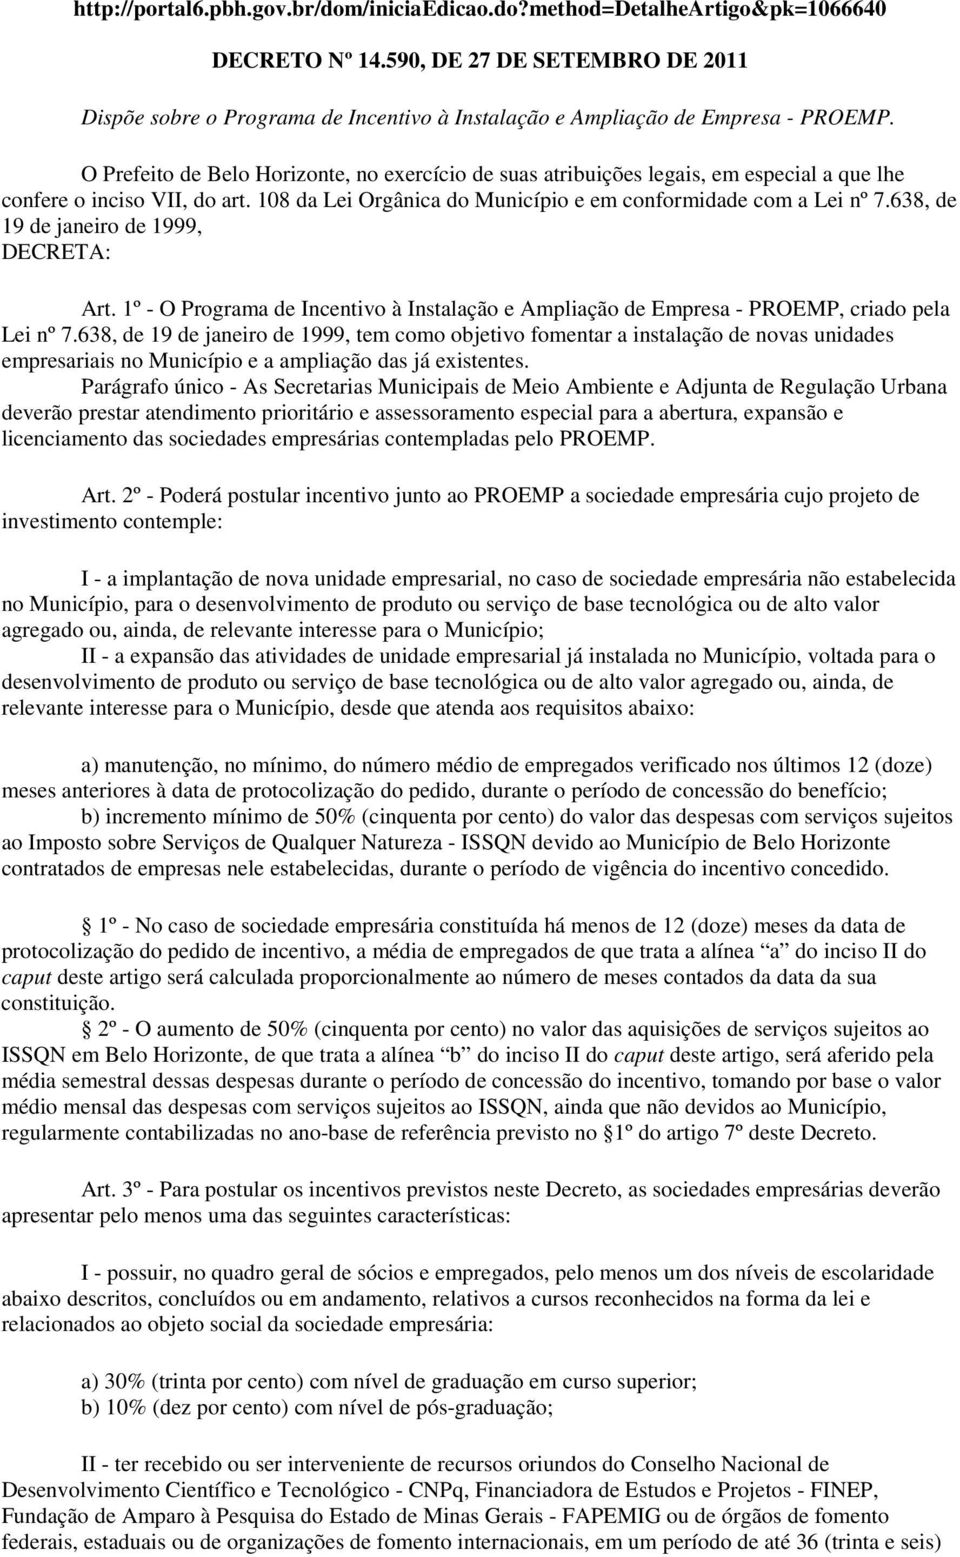 O Prefeito de Belo Horizonte, no exercício de suas atribuições legais, em especial a que lhe confere o inciso VII, do art. 108 da Lei Orgânica do Município e em conformidade com a Lei nº 7.